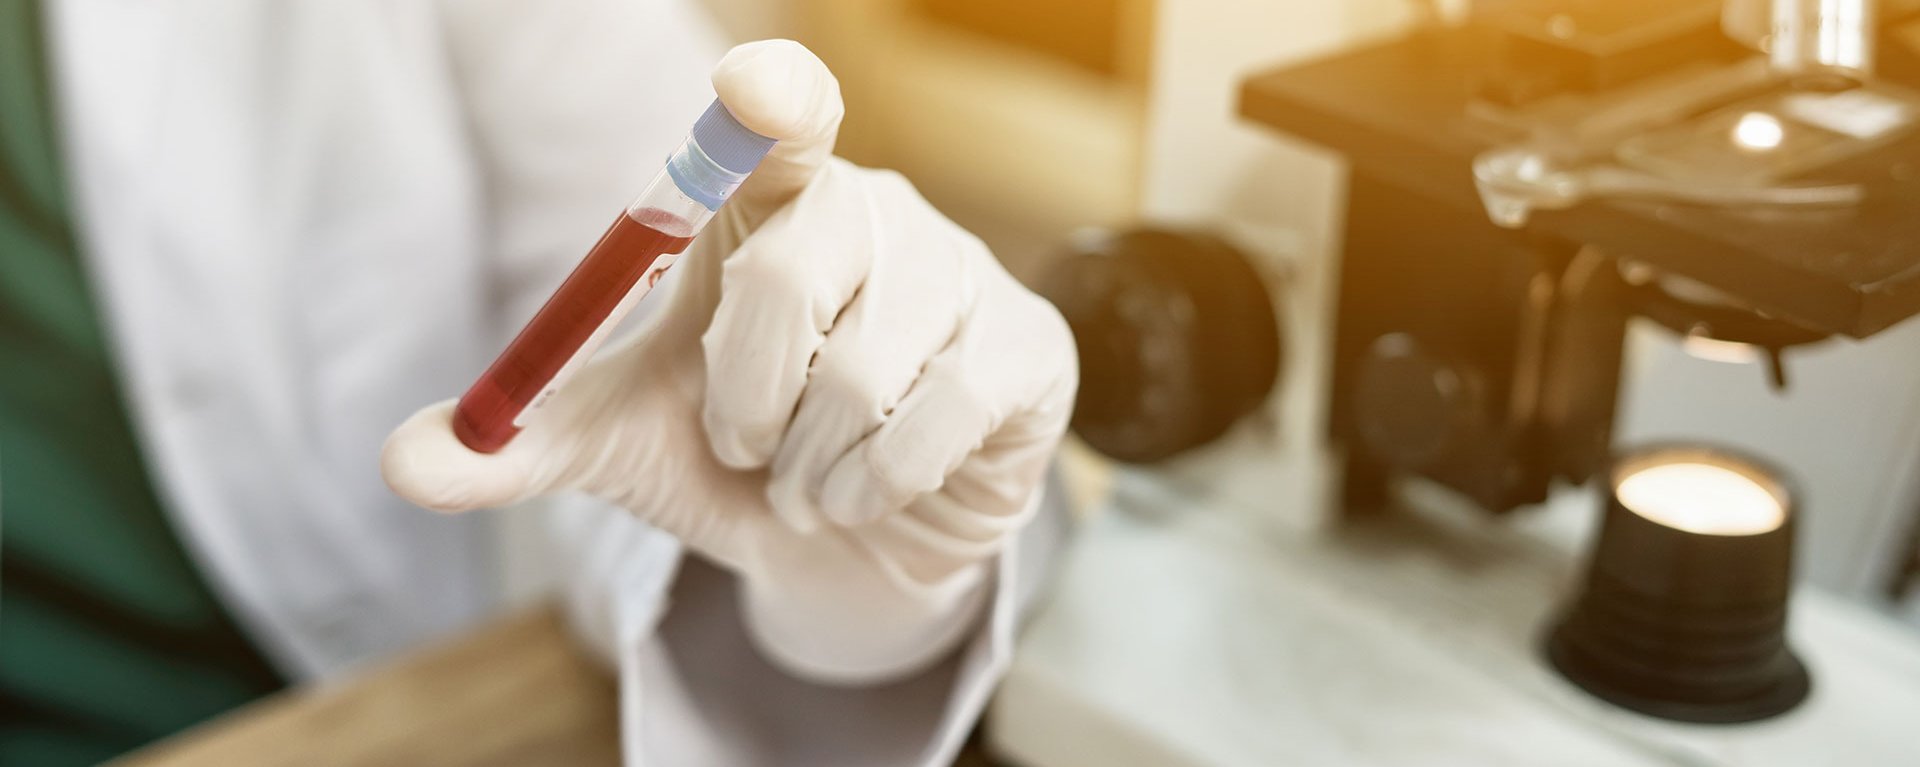  Ein Labortechniker macht einen Bluttest im Klinikverbund Allgäu. Im Hintergrund steht ein Mikroskop.